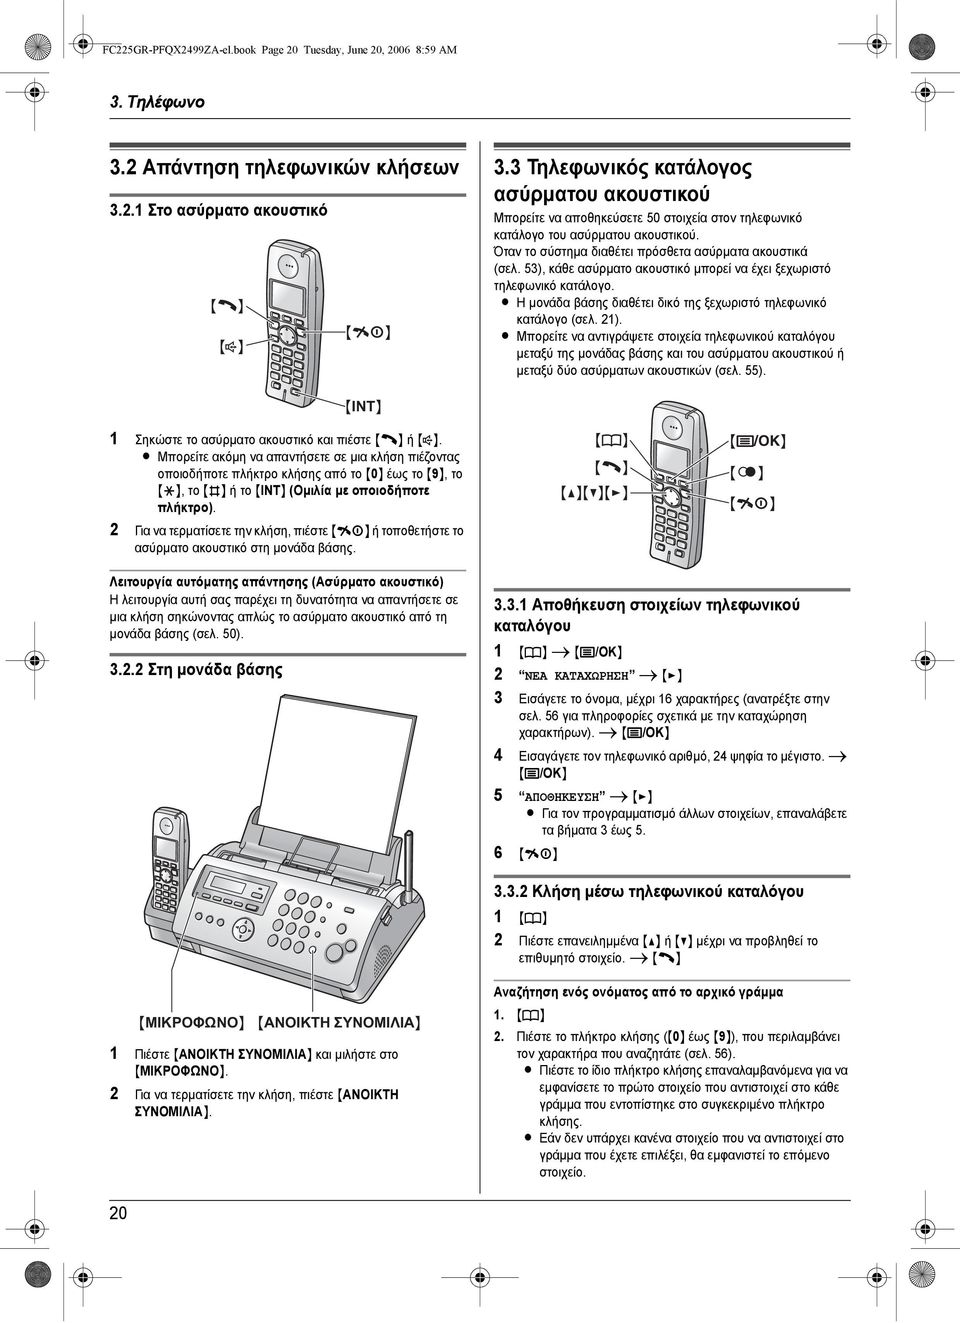 53), κάθε ασύρµατο ακουστικό µπορεί να έχει ξεχωριστό τηλεφωνικό κατάλογο. L Η µονάδα βάσης διαθέτει δικό της ξεχωριστό τηλεφωνικό κατάλογο (σελ. 21).